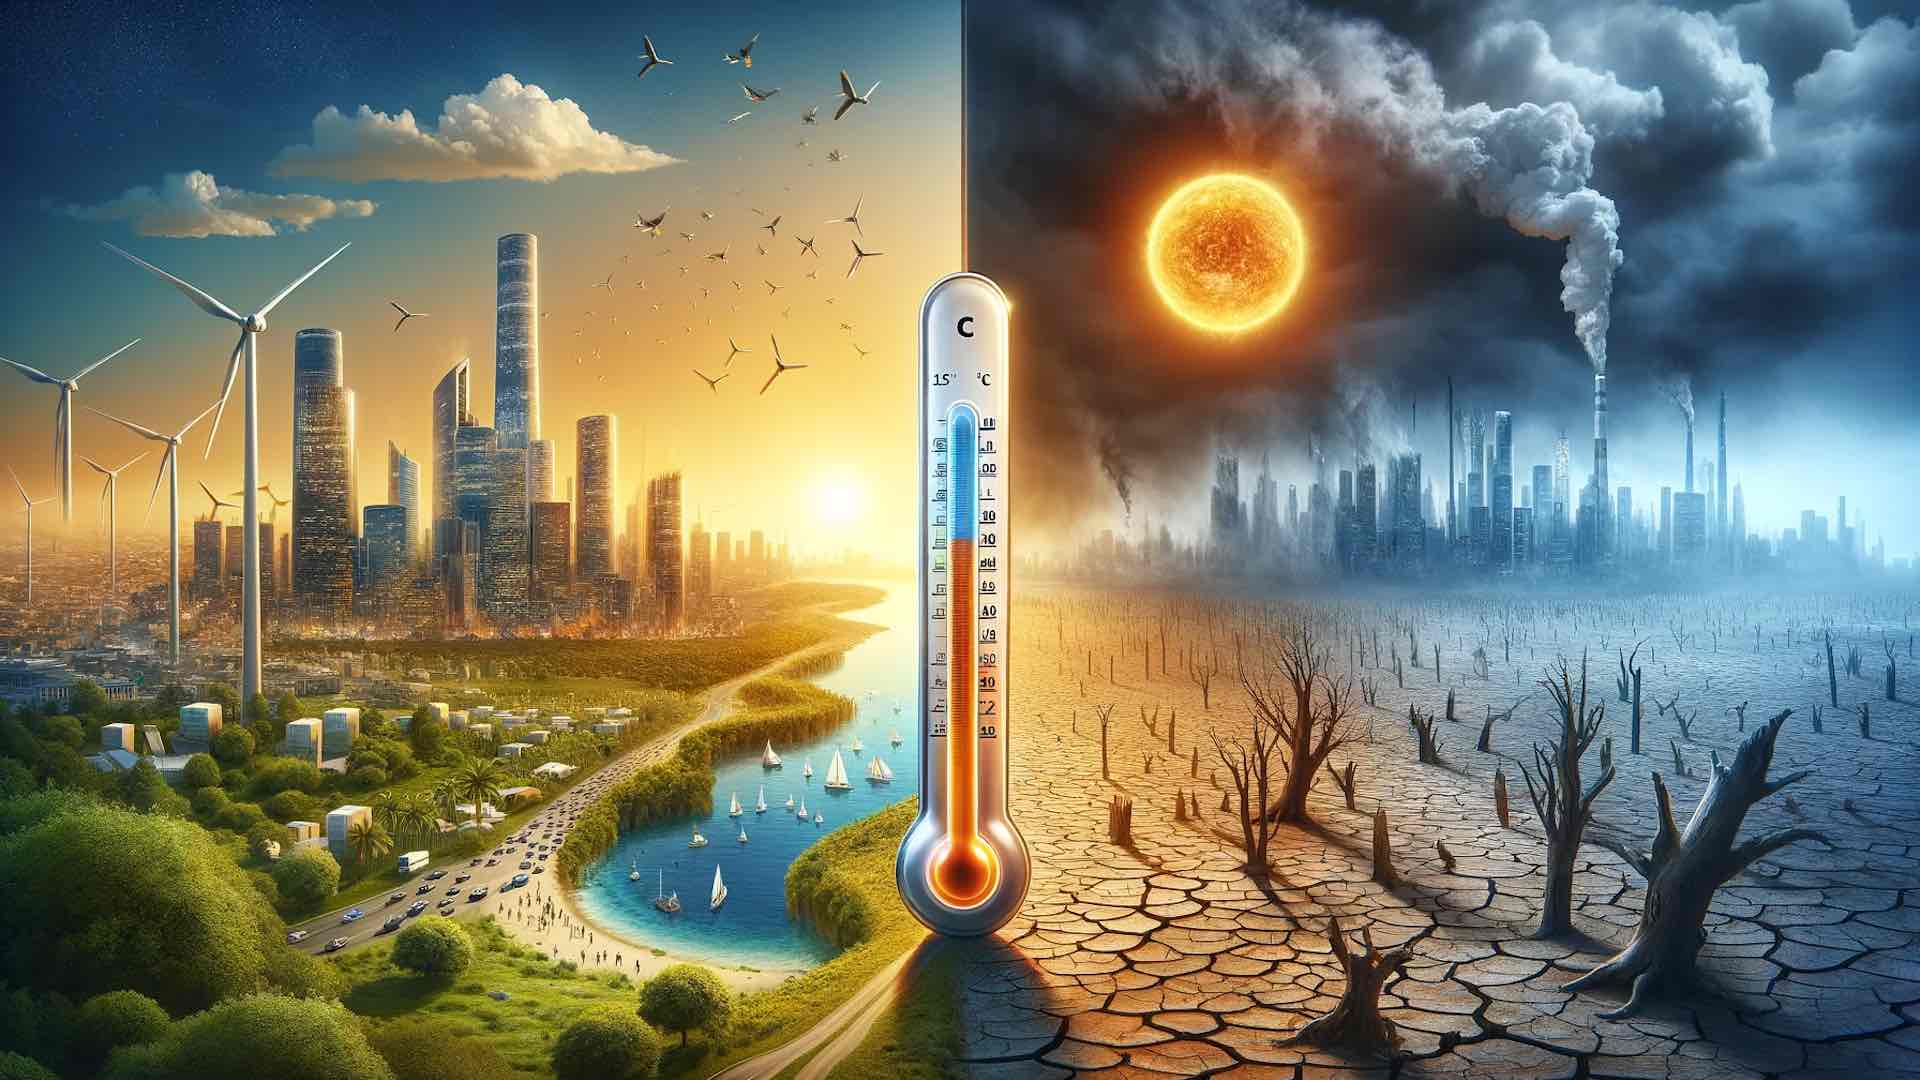 دراسة تحذر من ارتفاع درجة حرارة الأرض بمقدار 1.5 درجة مئوية